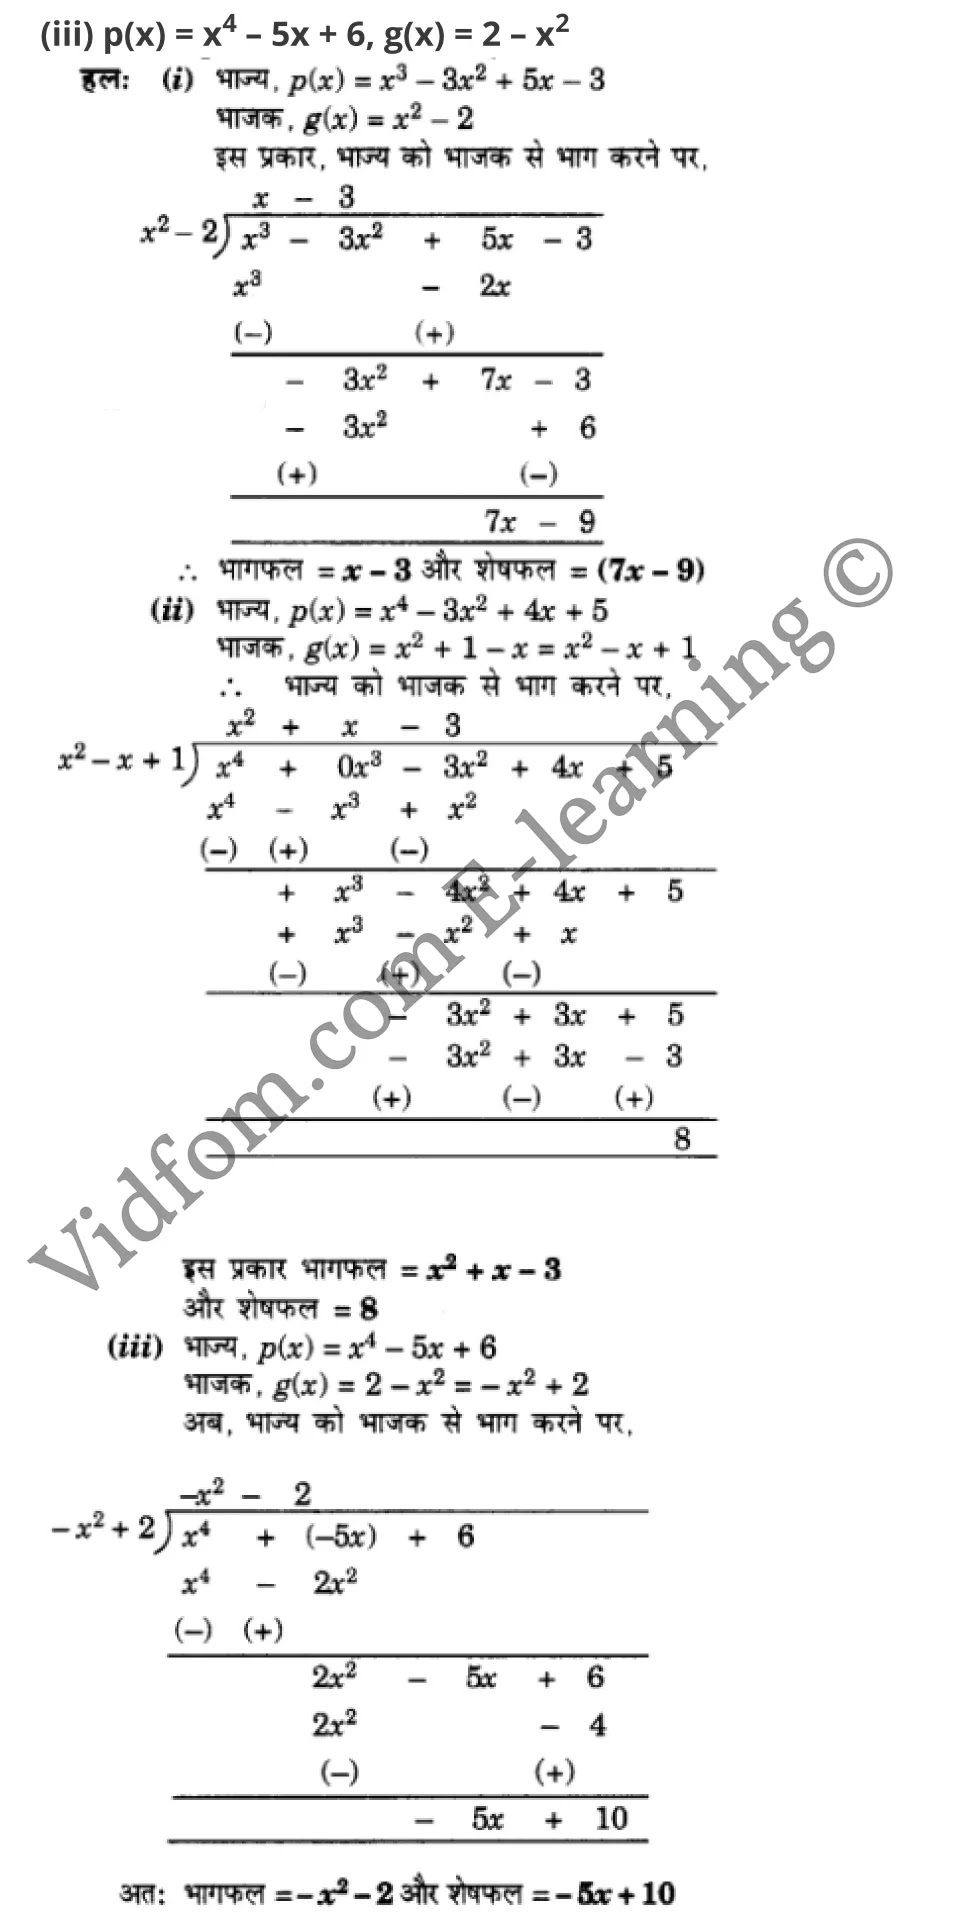 कक्षा 10 गणित  के नोट्स  हिंदी में एनसीईआरटी समाधान,     class 10 Maths chapter 2,   class 10 Maths chapter 2 ncert solutions in Maths,  class 10 Maths chapter 2 notes in hindi,   class 10 Maths chapter 2 question answer,   class 10 Maths chapter 2 notes,   class 10 Maths chapter 2 class 10 Maths  chapter 2 in  hindi,    class 10 Maths chapter 2 important questions in  hindi,   class 10 Maths hindi  chapter 2 notes in hindi,   class 10 Maths  chapter 2 test,   class 10 Maths  chapter 2 class 10 Maths  chapter 2 pdf,   class 10 Maths  chapter 2 notes pdf,   class 10 Maths  chapter 2 exercise solutions,  class 10 Maths  chapter 2,  class 10 Maths  chapter 2 notes study rankers,  class 10 Maths  chapter 2 notes,   class 10 Maths hindi  chapter 2 notes,    class 10 Maths   chapter 2  class 10  notes pdf,  class 10 Maths  chapter 2 class 10  notes  ncert,  class 10 Maths  chapter 2 class 10 pdf,   class 10 Maths  chapter 2  book,   class 10 Maths  chapter 2 quiz class 10  ,    10  th class 10 Maths chapter 2  book up board,   up board 10  th class 10 Maths chapter 2 notes,  class 10 Maths,   class 10 Maths ncert solutions in Maths,   class 10 Maths notes in hindi,   class 10 Maths question answer,   class 10 Maths notes,  class 10 Maths class 10 Maths  chapter 2 in  hindi,    class 10 Maths important questions in  hindi,   class 10 Maths notes in hindi,    class 10 Maths test,  class 10 Maths class 10 Maths  chapter 2 pdf,   class 10 Maths notes pdf,   class 10 Maths exercise solutions,   class 10 Maths,  class 10 Maths notes study rankers,   class 10 Maths notes,  class 10 Maths notes,   class 10 Maths  class 10  notes pdf,   class 10 Maths class 10  notes  ncert,   class 10 Maths class 10 pdf,   class 10 Maths  book,  class 10 Maths quiz class 10  ,  10  th class 10 Maths    book up board,    up board 10  th class 10 Maths notes,      कक्षा 10 गणित अध्याय 2 ,  कक्षा 10 गणित, कक्षा 10 गणित अध्याय 2  के नोट्स हिंदी में,  कक्षा 10 का गणित अध्याय 2 का प्रश्न उत्तर,  कक्षा 10 गणित अध्याय 2  के नोट्स,  10 कक्षा गणित  हिंदी में, कक्षा 10 गणित अध्याय 2  हिंदी में,  कक्षा 10 गणित अध्याय 2  महत्वपूर्ण प्रश्न हिंदी में, कक्षा 10   हिंदी के नोट्स  हिंदी में, गणित हिंदी  कक्षा 10 नोट्स pdf,    गणित हिंदी  कक्षा 10 नोट्स 2021 ncert,  गणित हिंदी  कक्षा 10 pdf,   गणित हिंदी  पुस्तक,   गणित हिंदी की बुक,   गणित हिंदी  प्रश्नोत्तरी class 10 ,  10   वीं गणित  पुस्तक up board,   बिहार बोर्ड 10  पुस्तक वीं गणित नोट्स,    गणित  कक्षा 10 नोट्स 2021 ncert,   गणित  कक्षा 10 pdf,   गणित  पुस्तक,   गणित की बुक,   गणित  प्रश्नोत्तरी class 10,   कक्षा 10 गणित,  कक्षा 10 गणित  के नोट्स हिंदी में,  कक्षा 10 का गणित का प्रश्न उत्तर,  कक्षा 10 गणित  के नोट्स, 10 कक्षा गणित 2021  हिंदी में, कक्षा 10 गणित  हिंदी में, कक्षा 10 गणित  महत्वपूर्ण प्रश्न हिंदी में, कक्षा 10 गणित  हिंदी के नोट्स  हिंदी में, गणित हिंदी  कक्षा 10 नोट्स pdf,   गणित हिंदी  कक्षा 10 नोट्स 2021 ncert,   गणित हिंदी  कक्षा 10 pdf,  गणित हिंदी  पुस्तक,   गणित हिंदी की बुक,   गणित हिंदी  प्रश्नोत्तरी class 10 ,  10   वीं गणित  पुस्तक up board,  बिहार बोर्ड 10  पुस्तक वीं गणित नोट्स,    गणित  कक्षा 10 नोट्स 2021 ncert,  गणित  कक्षा 10 pdf,   गणित  पुस्तक,  गणित की बुक,   गणित  प्रश्नोत्तरी   class 10,   10th Maths   book in hindi, 10th Maths notes in hindi, cbse books for class 10  , cbse books in hindi, cbse ncert books, class 10   Maths   notes in hindi,  class 10 Maths hindi ncert solutions, Maths 2020, Maths  2021,